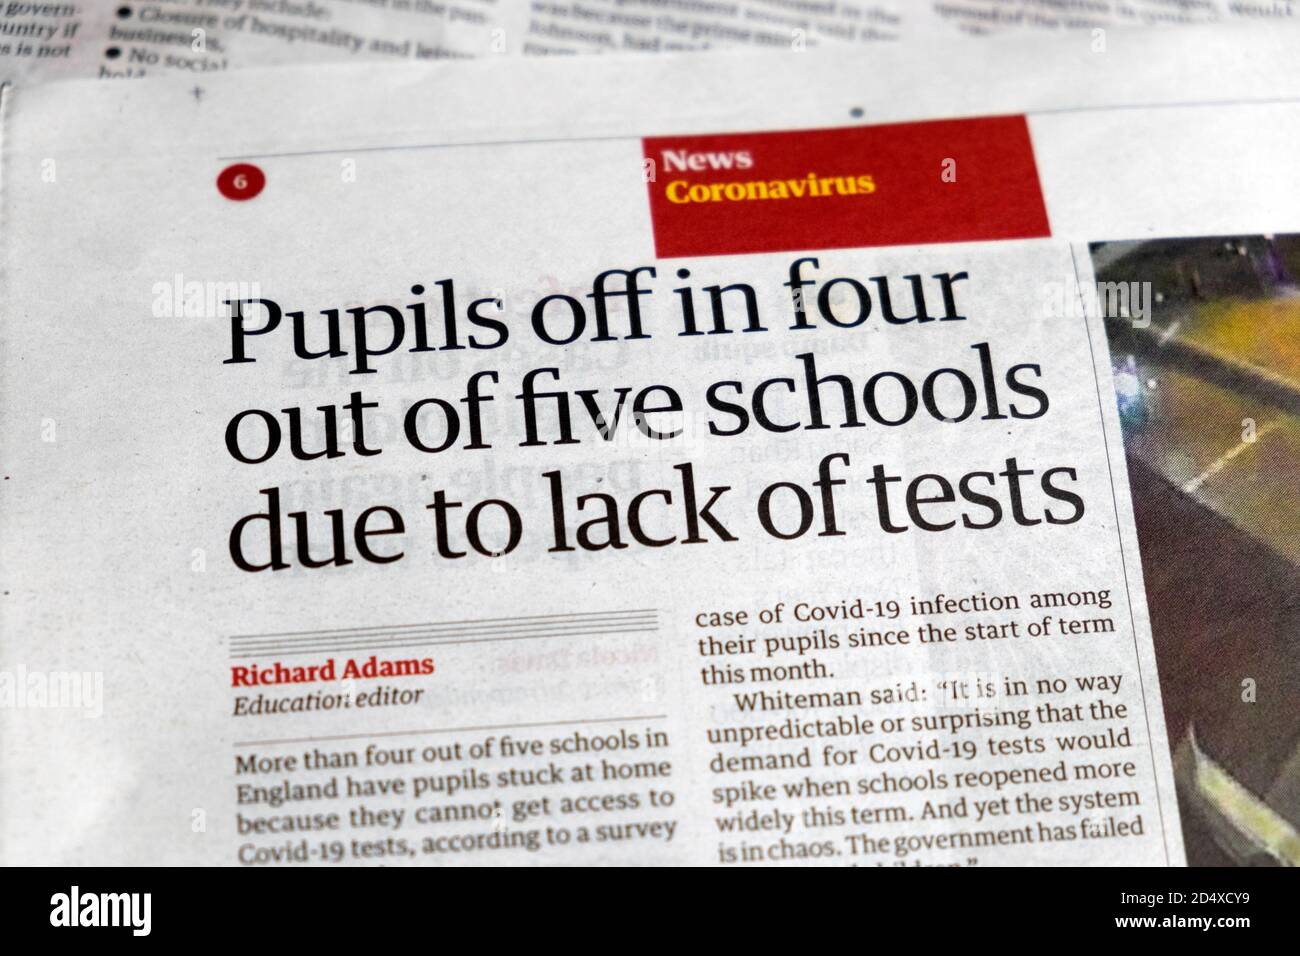 "Schüler aus in vier von fünf Schulen wegen Fehlende Tests' Coronavirus News Guardian Schlagzeile 19 September 2020 London England Großbritannien Stockfoto